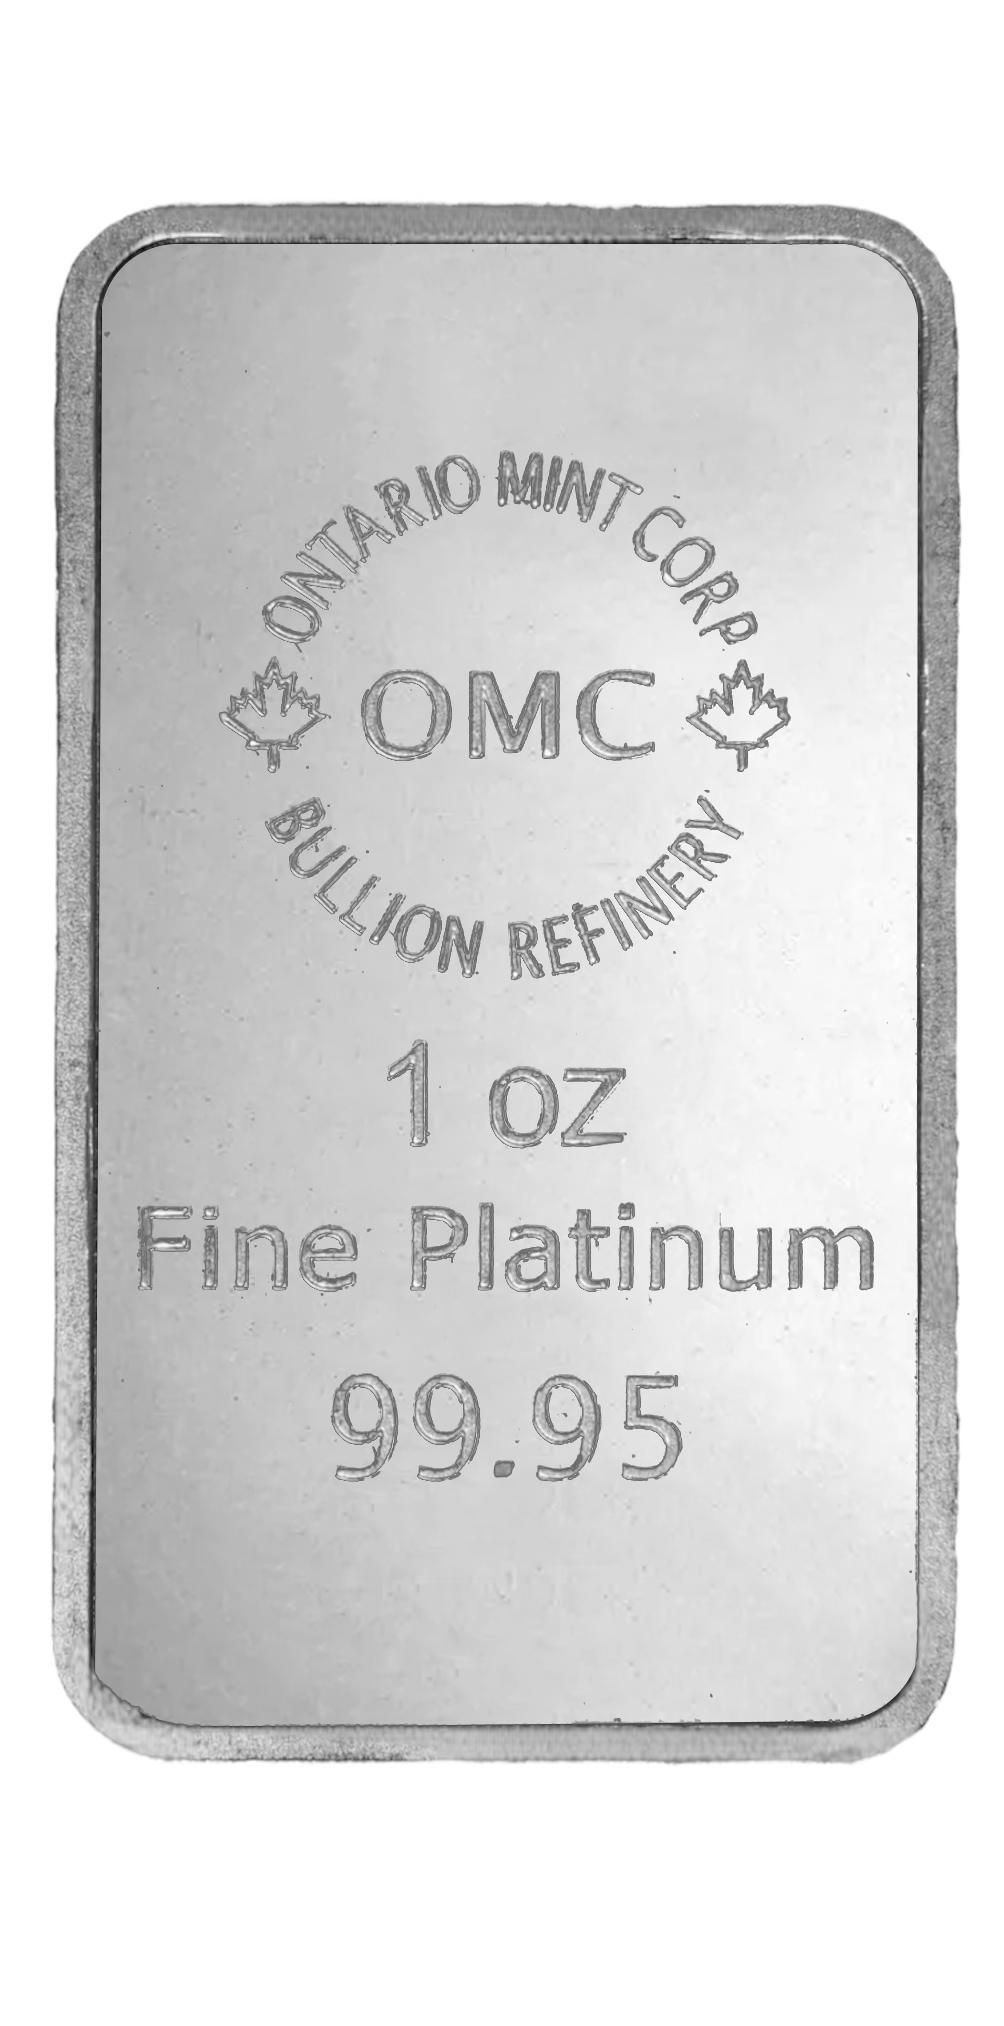 1oz platinum OMC Bar